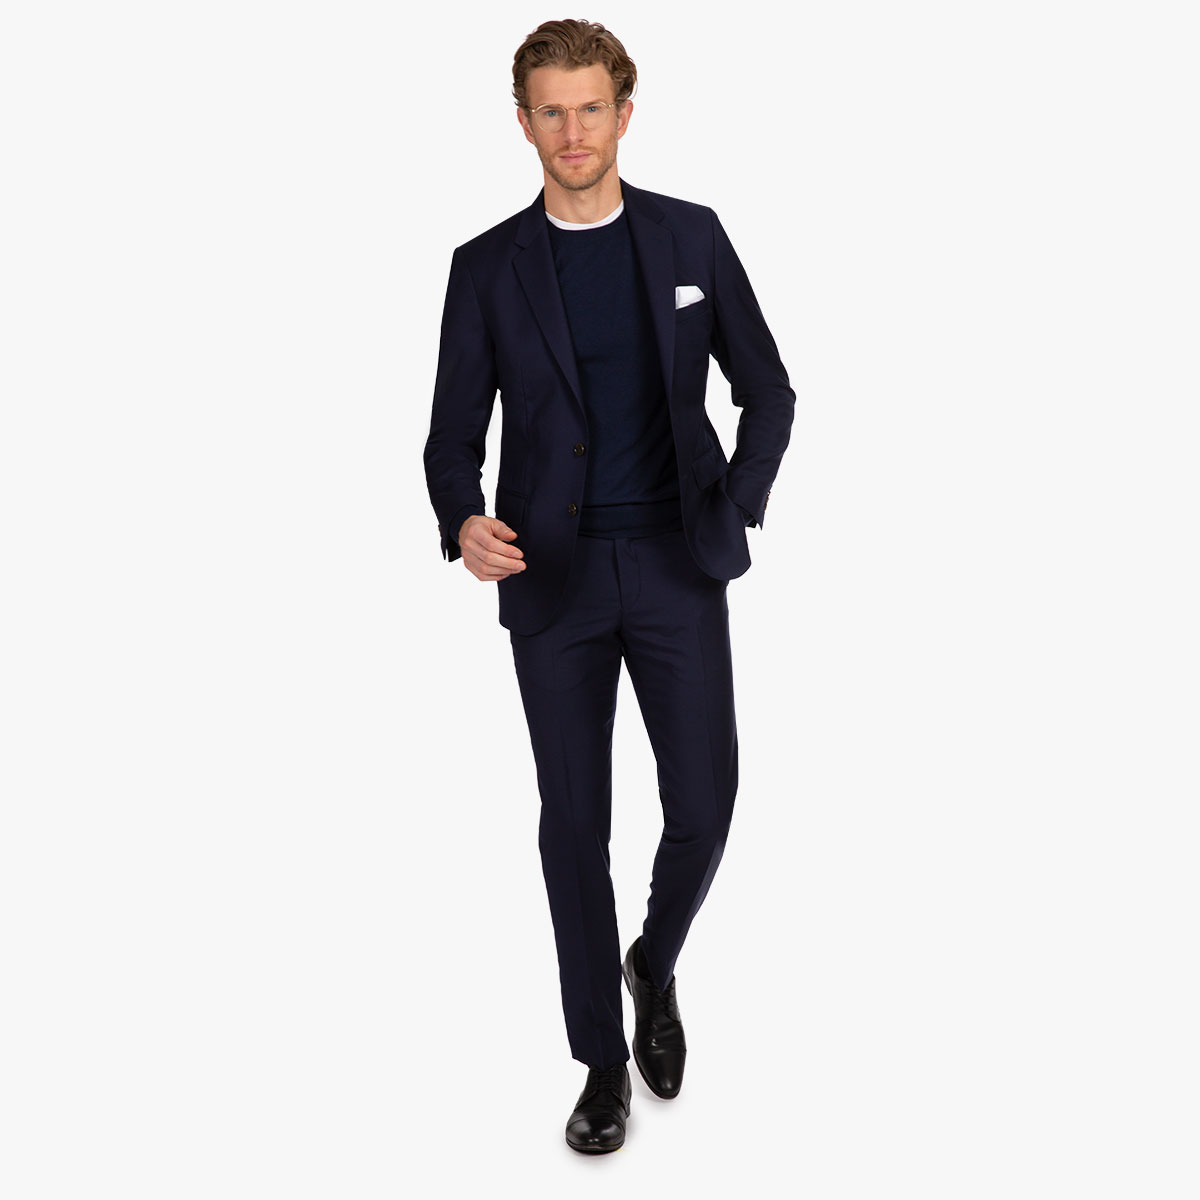 Eleganter Look mit blauem Anzug